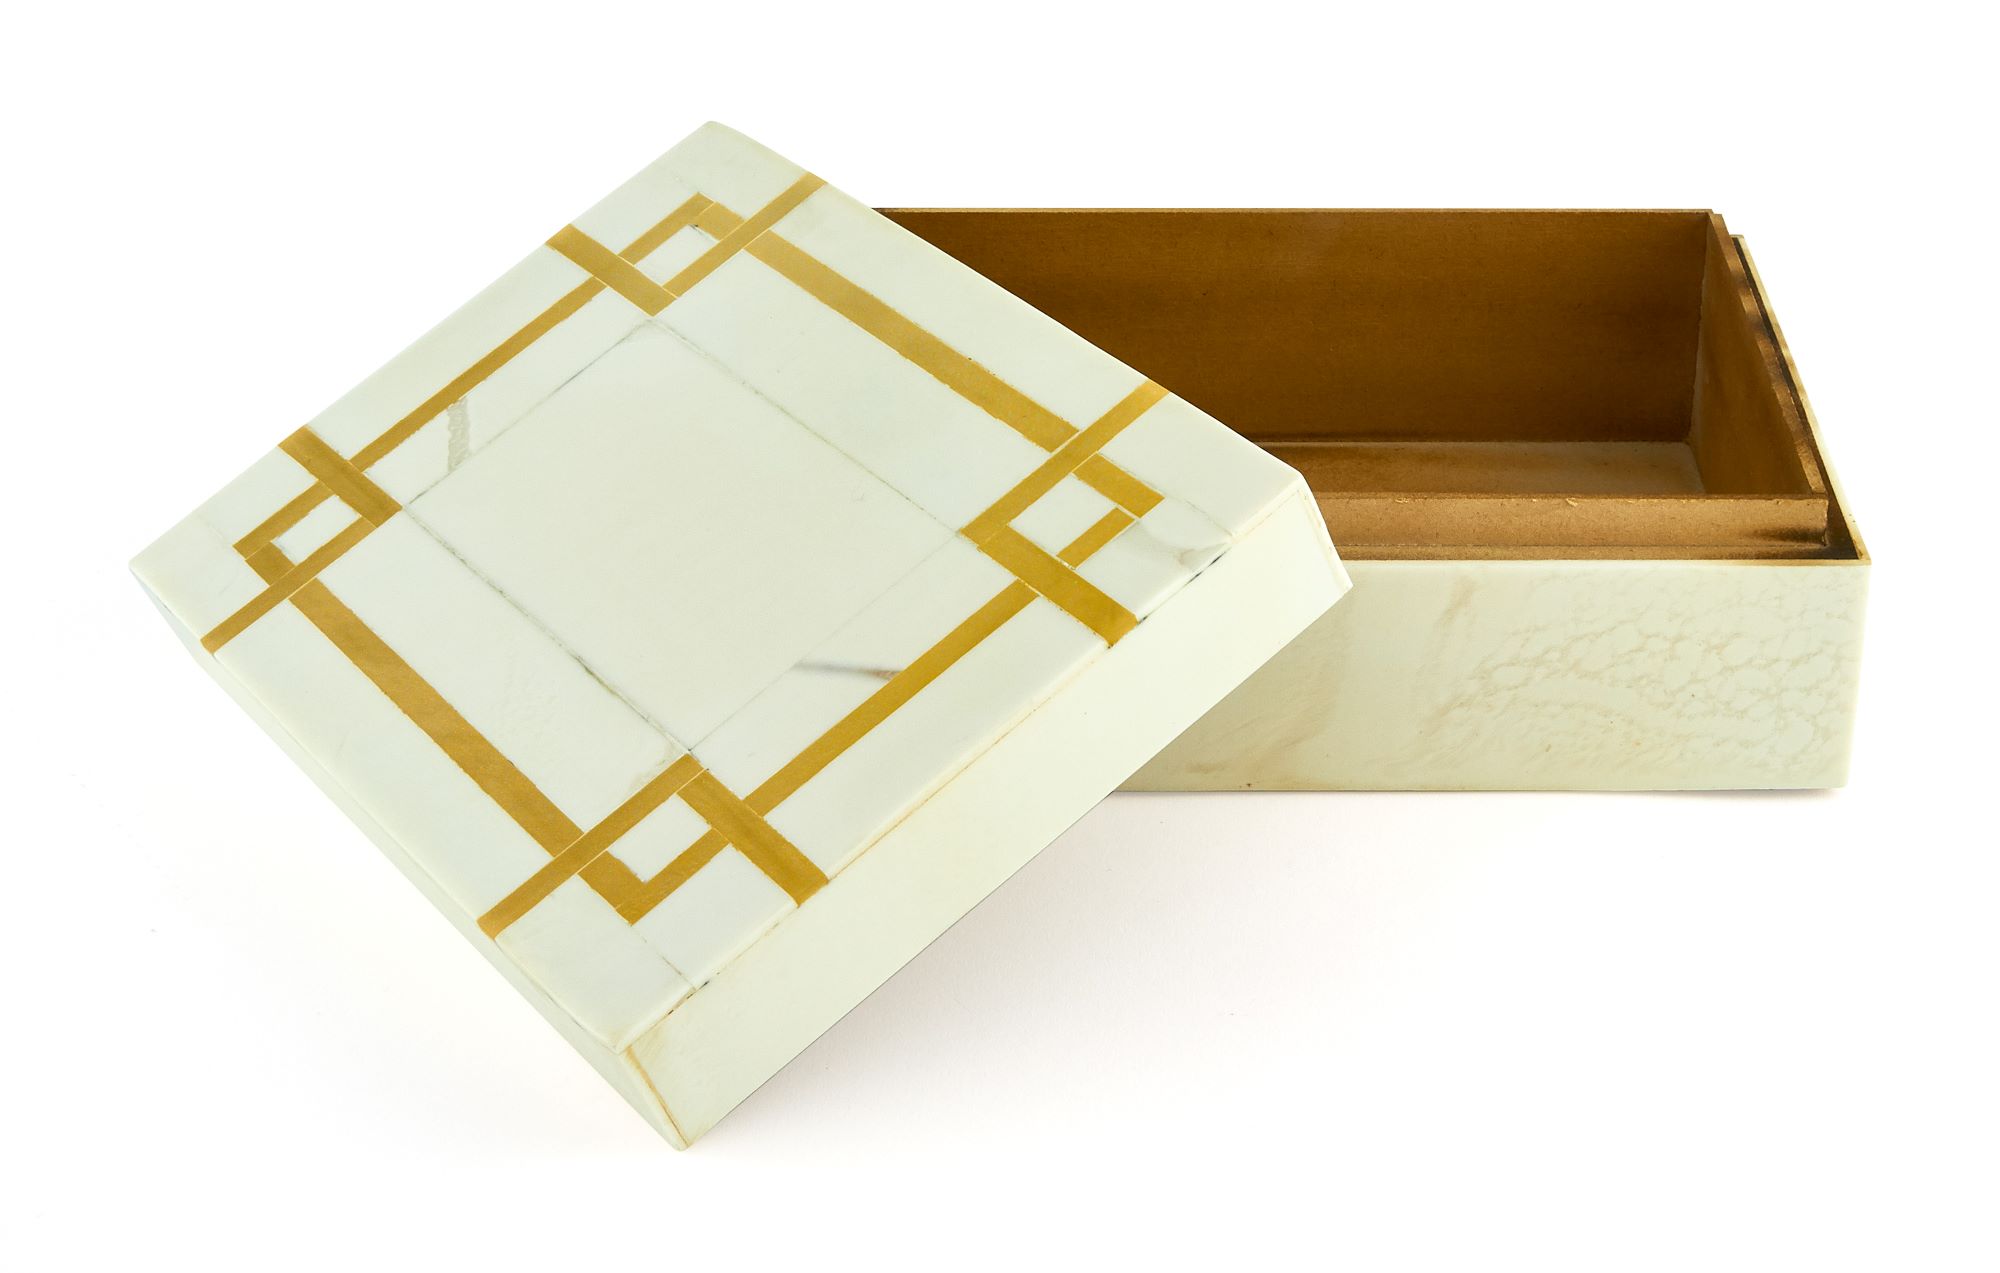 Art Deco Design Gold Box Small 8x6x3